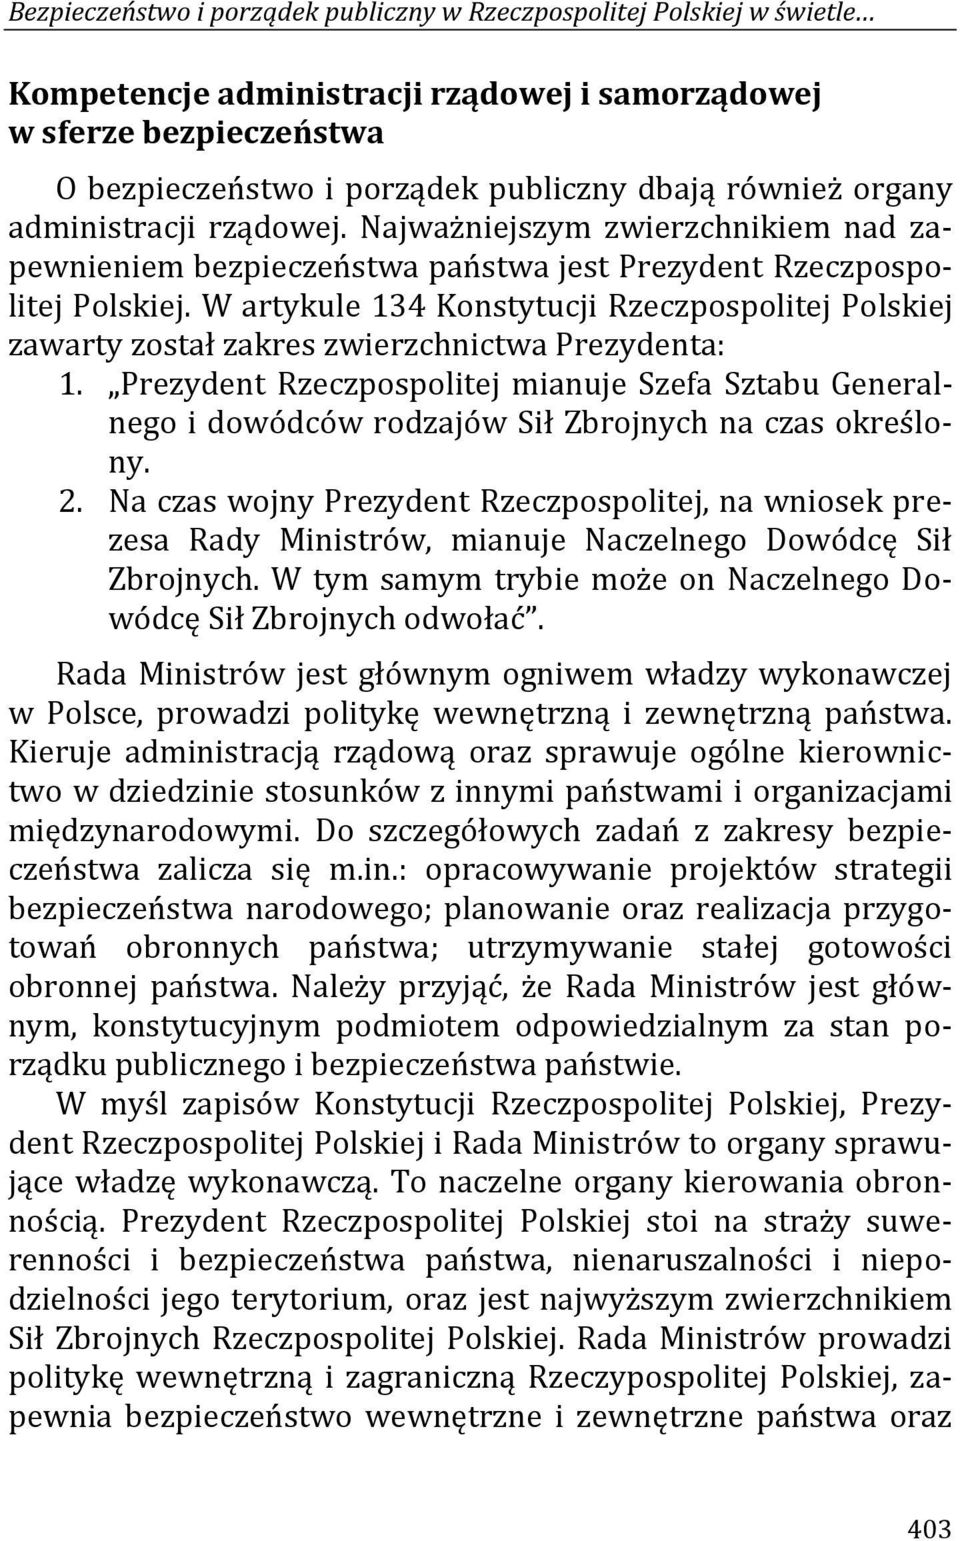 W artykule 134 Konstytucji Rzeczpospolitej Polskiej zawarty został zakres zwierzchnictwa Prezydenta: 1.